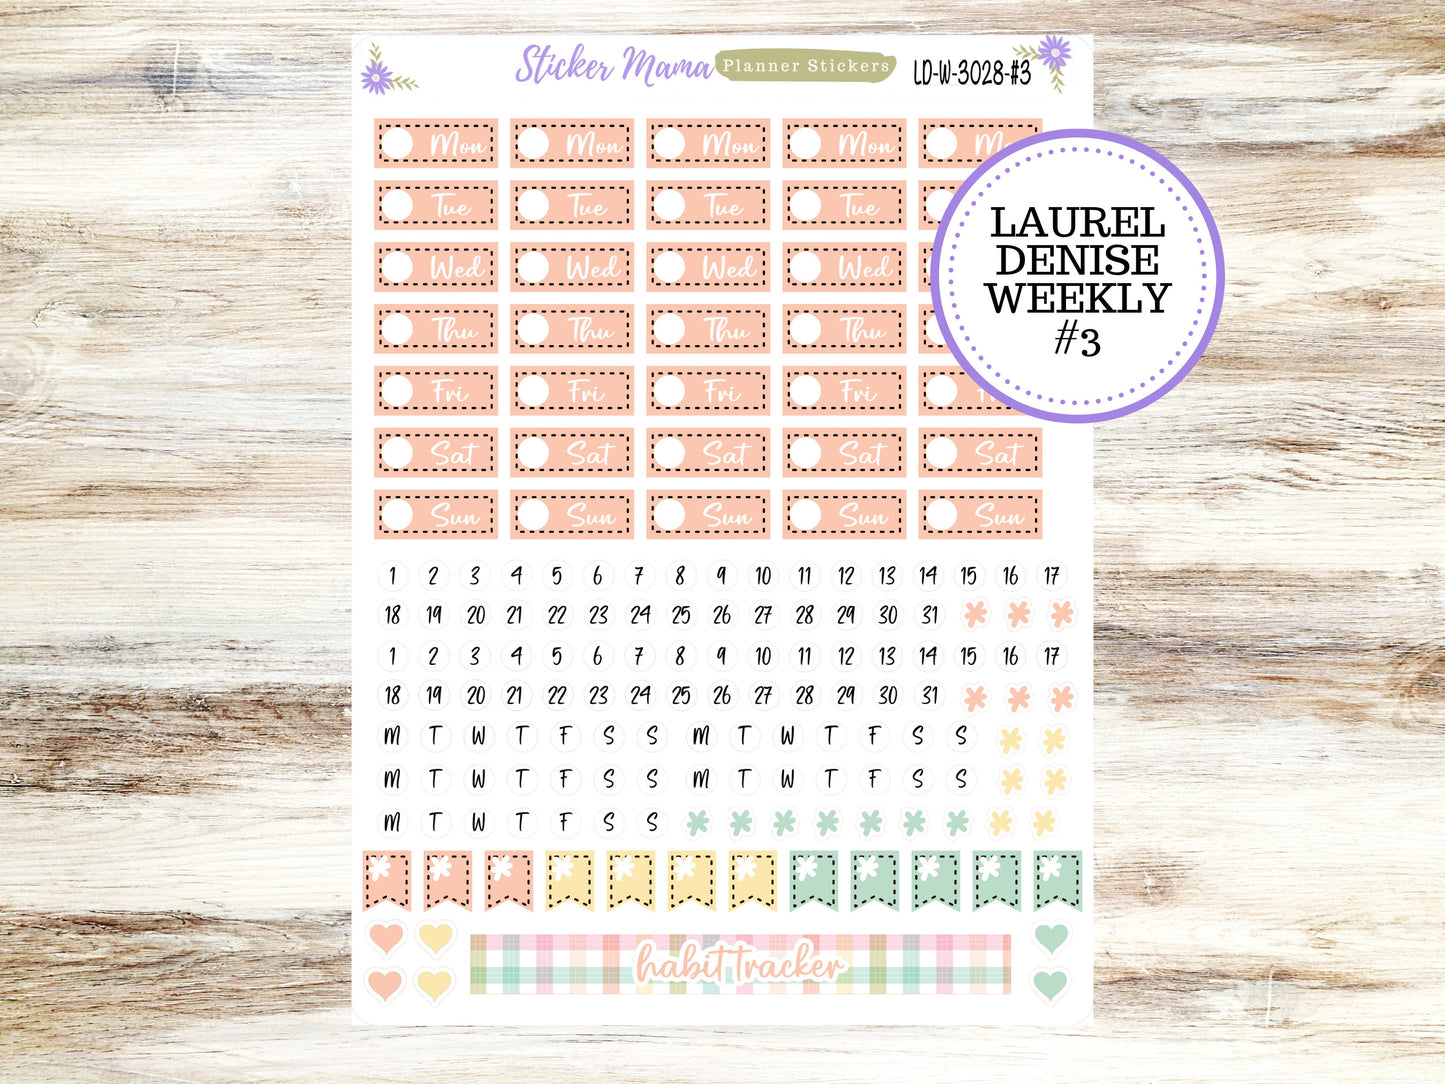 LAUREL DENISE PLANNER Kit #3028 || Laurel Denise Kit || Laurel Denise Stickers